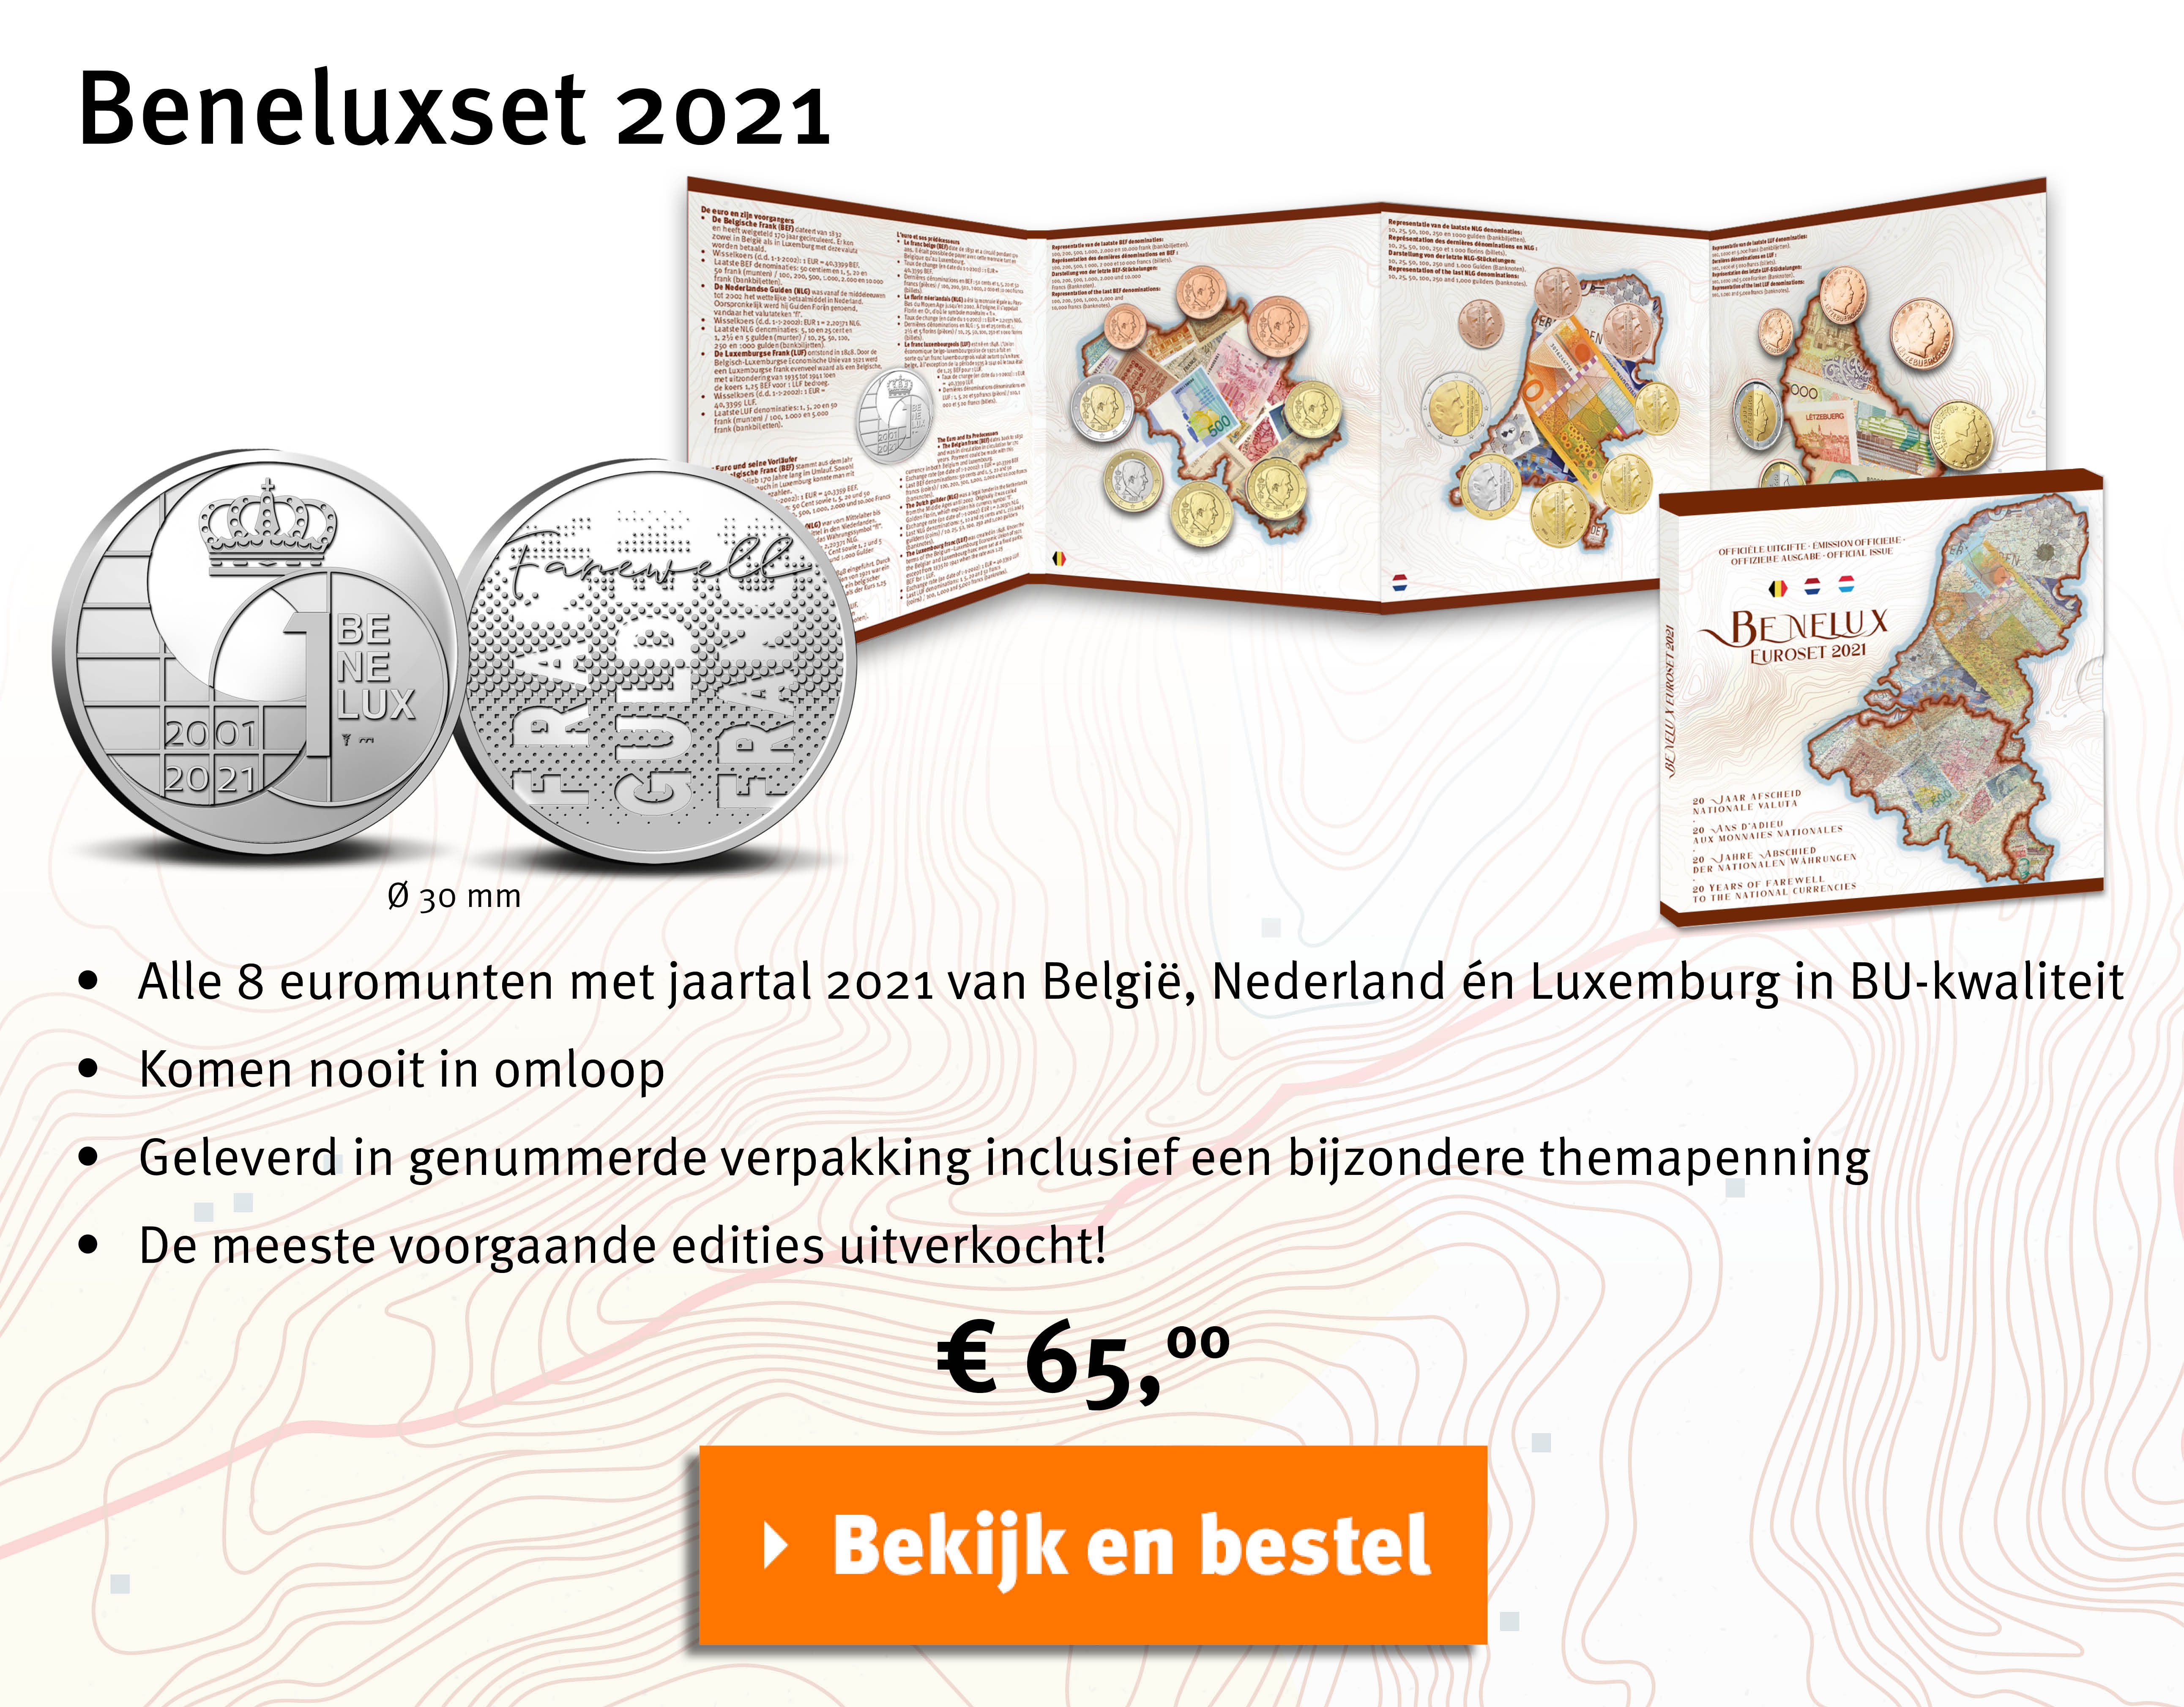 Bekijk en bestel: Beneluxset 2021